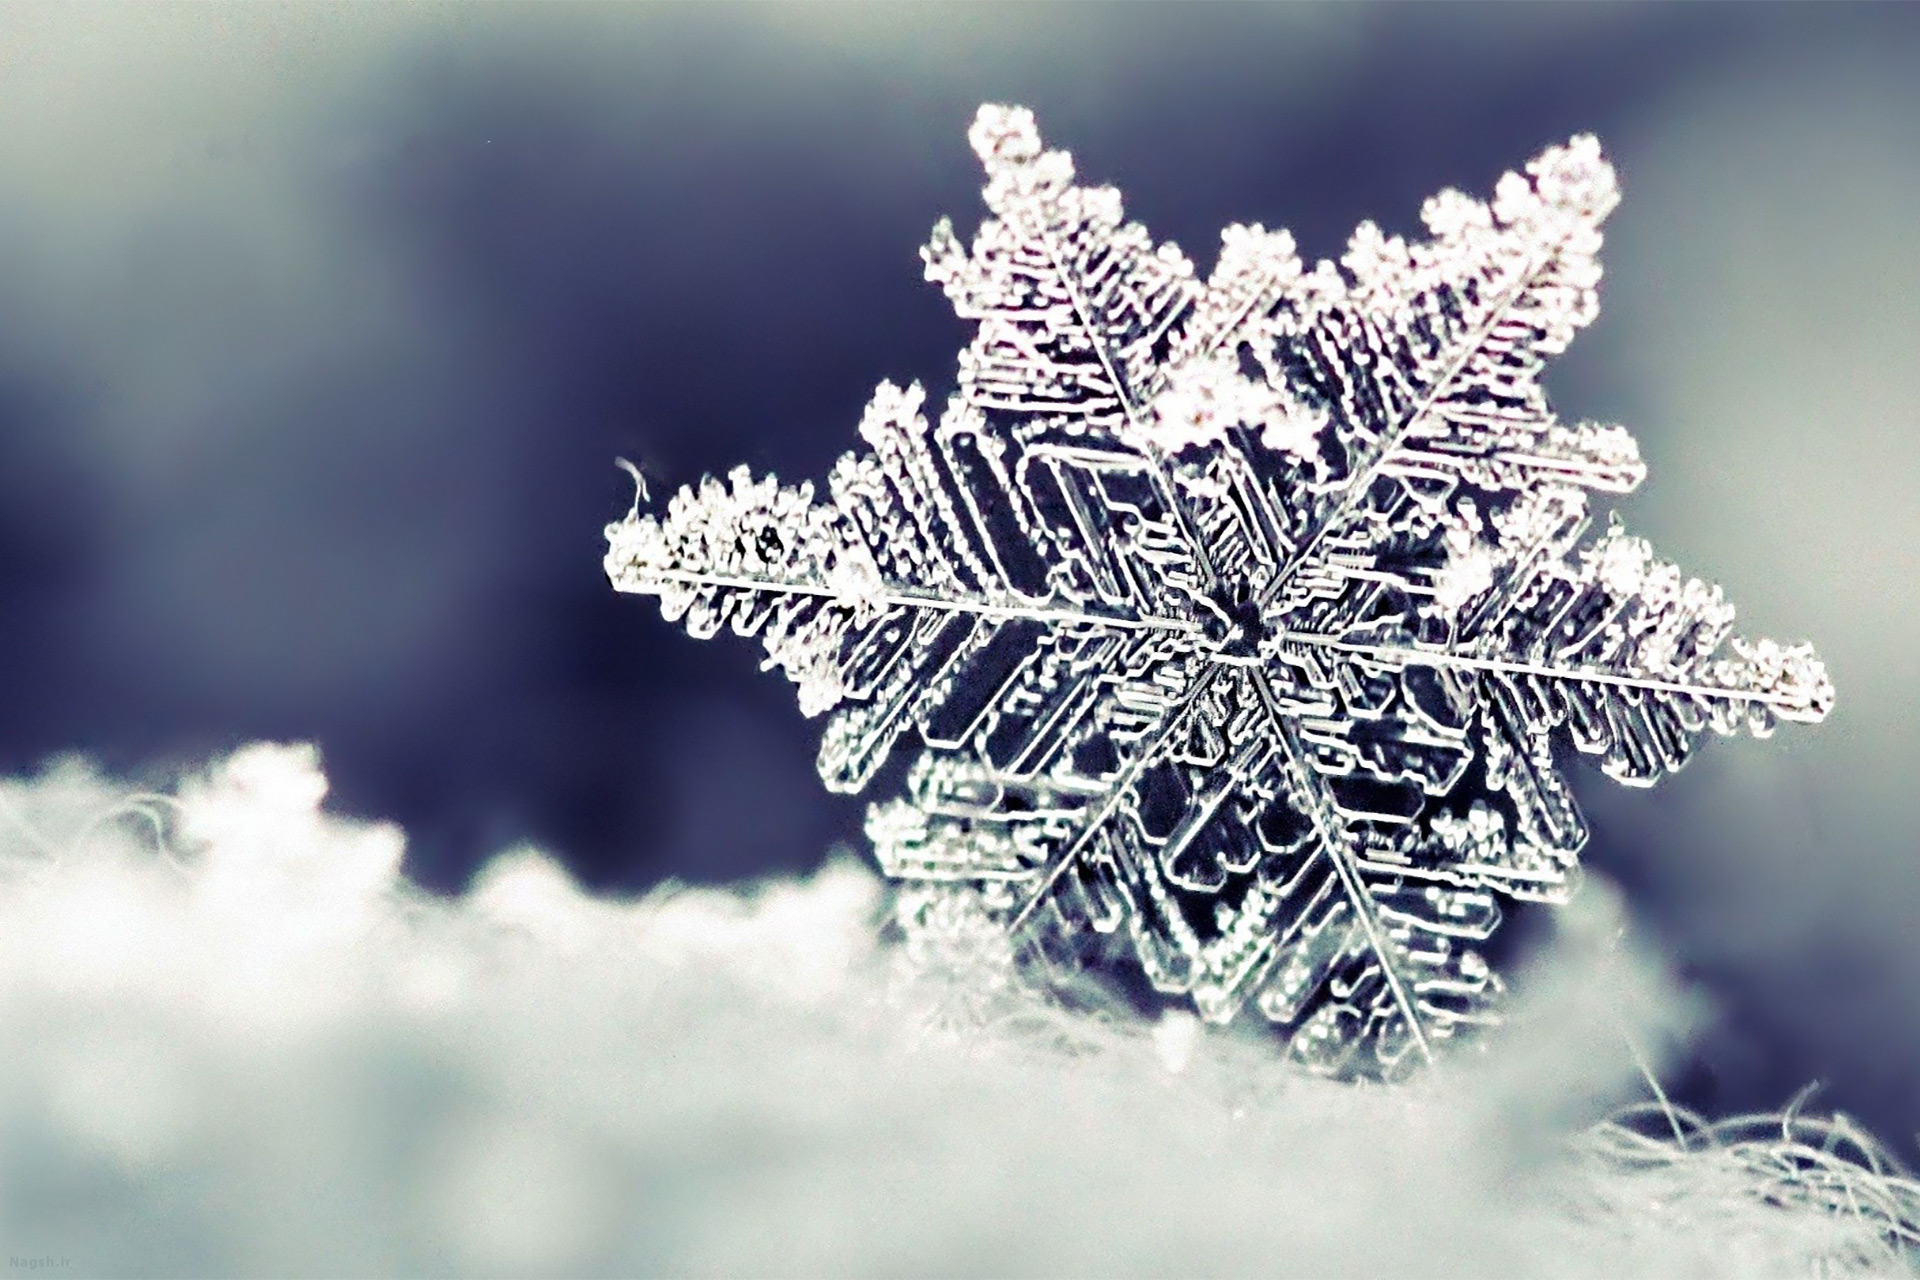 اینفوگرافیک | راه های کاربردی برای محافظت در برابر سرمای زمستان  /////تکمیل شد.